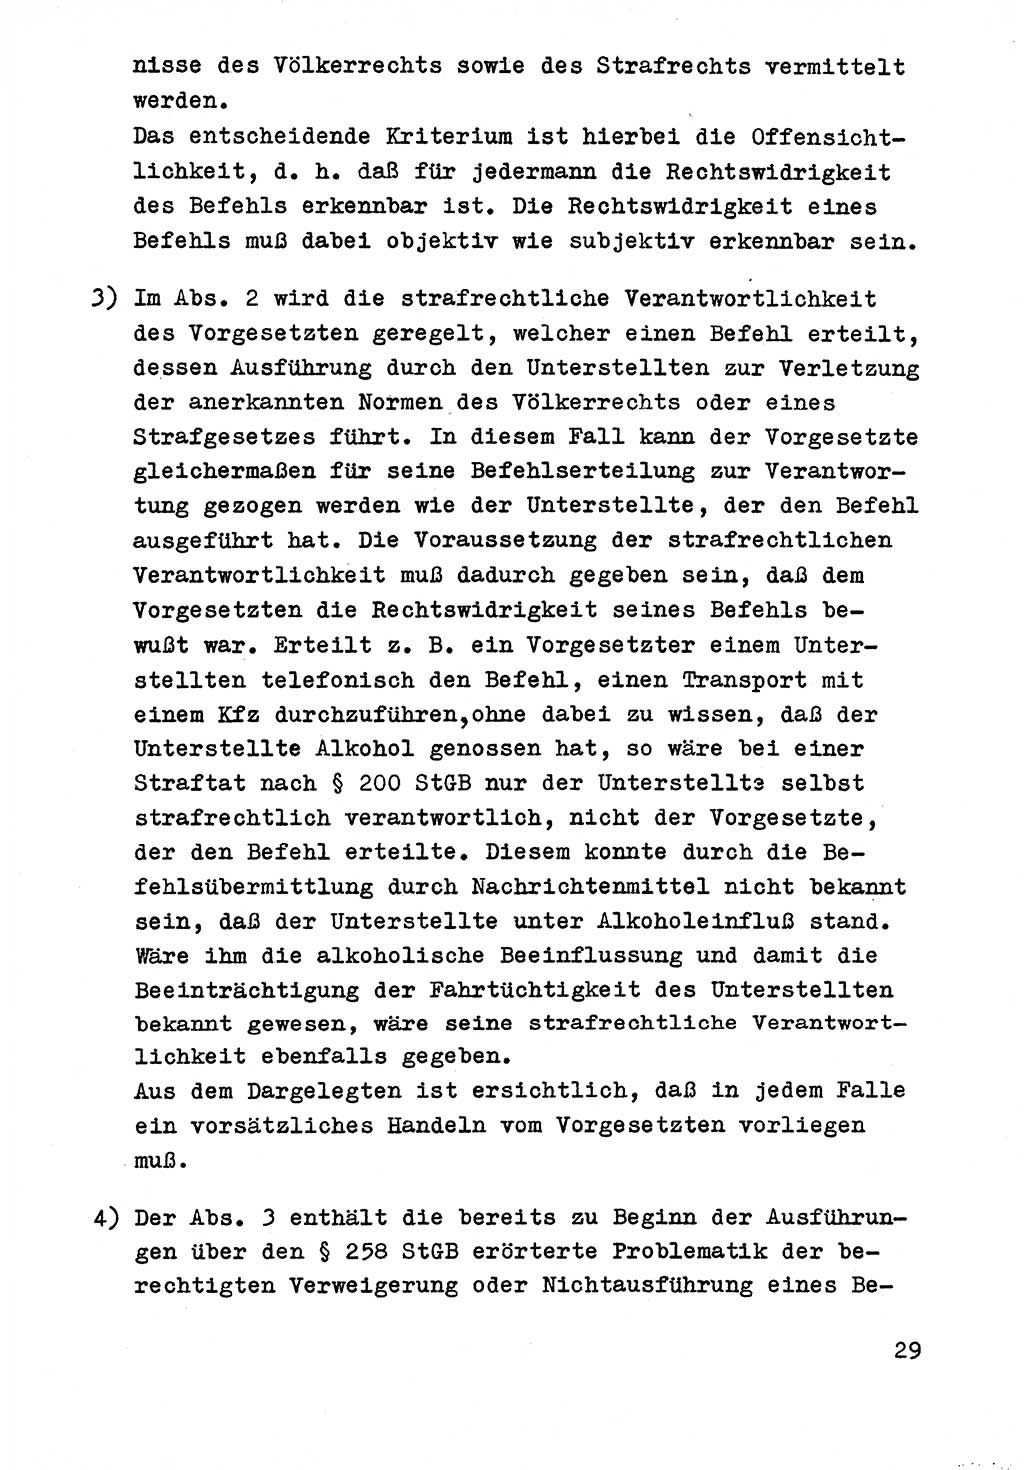 Strafrecht der DDR (Deutsche Demokratische Republik), Besonderer Teil, Lehrmaterial, Heft 9 1969, Seite 29 (Strafr. DDR BT Lehrmat. H. 9 1969, S. 29)